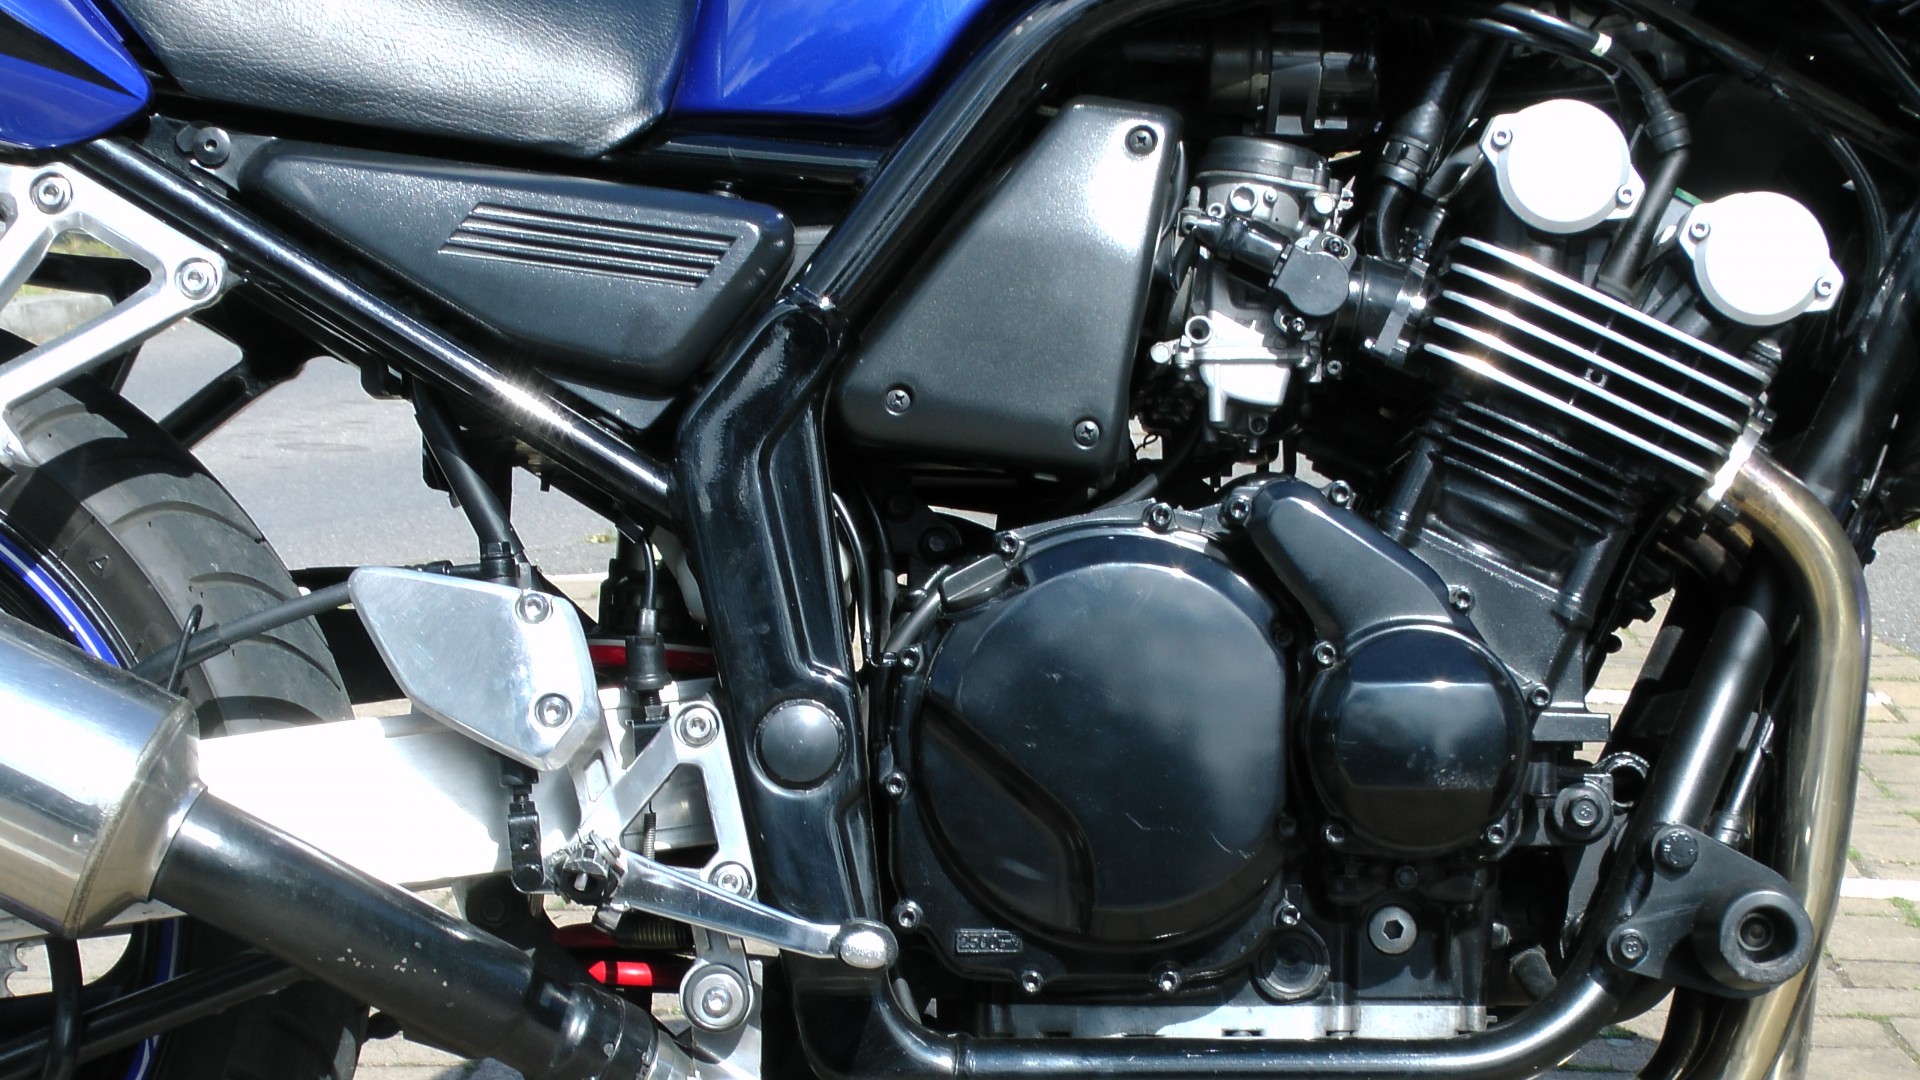 yamaha fazer motorcycle engine engine motorcycle engine free photo